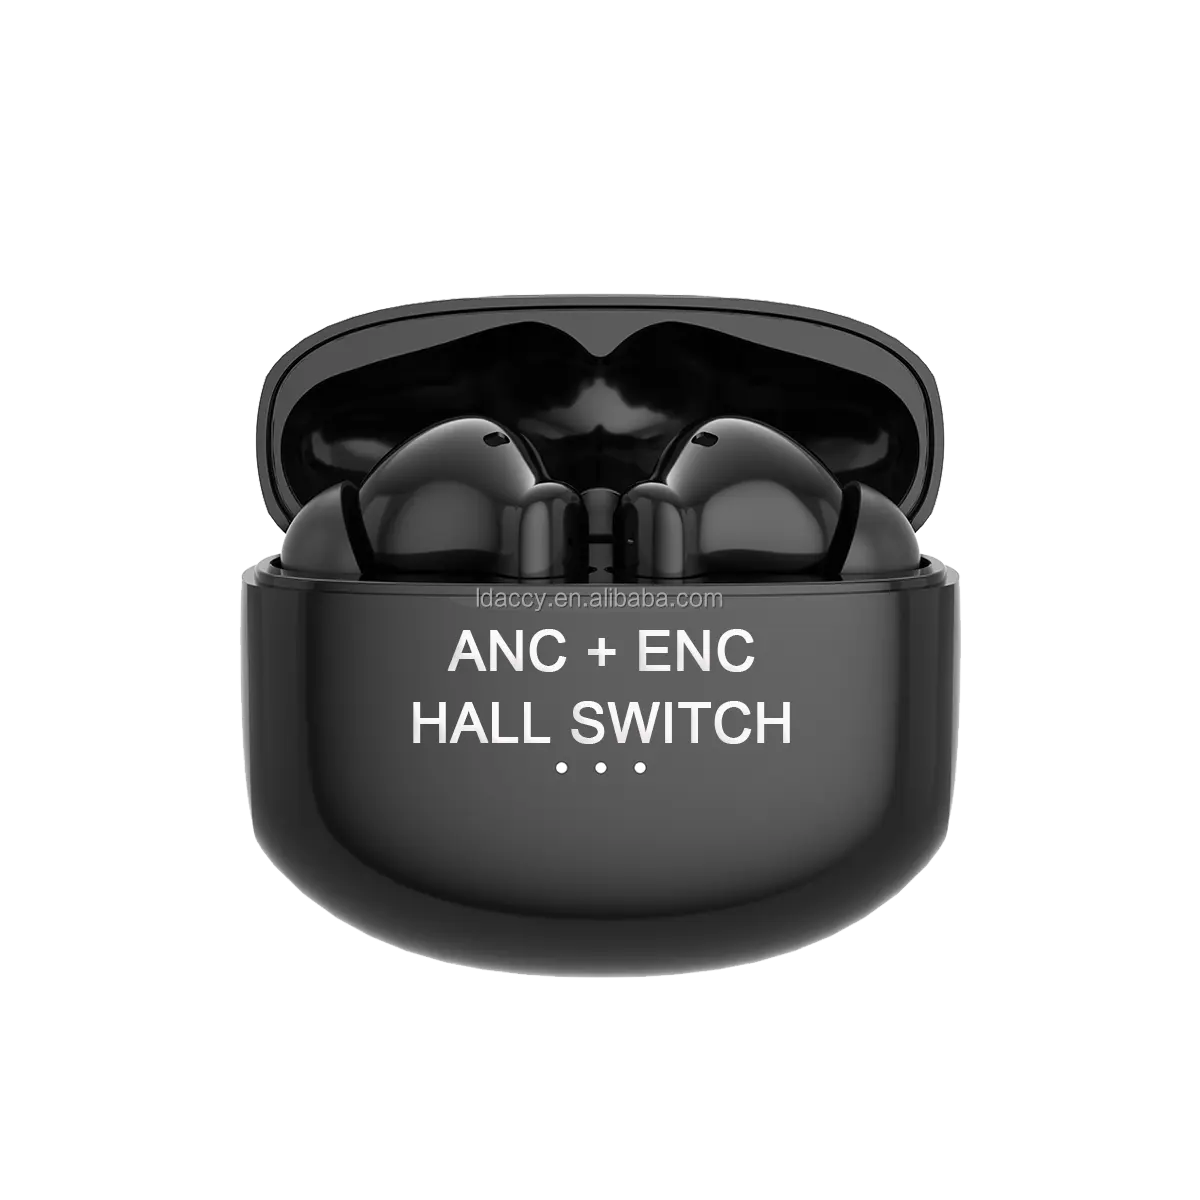 ANC 블루투스 5.1 이어폰 무선 활성 소음 차단 헤드폰 HIFI 스테레오 4-mic ANC 이어폰 깊은베이스 저렴한 가격